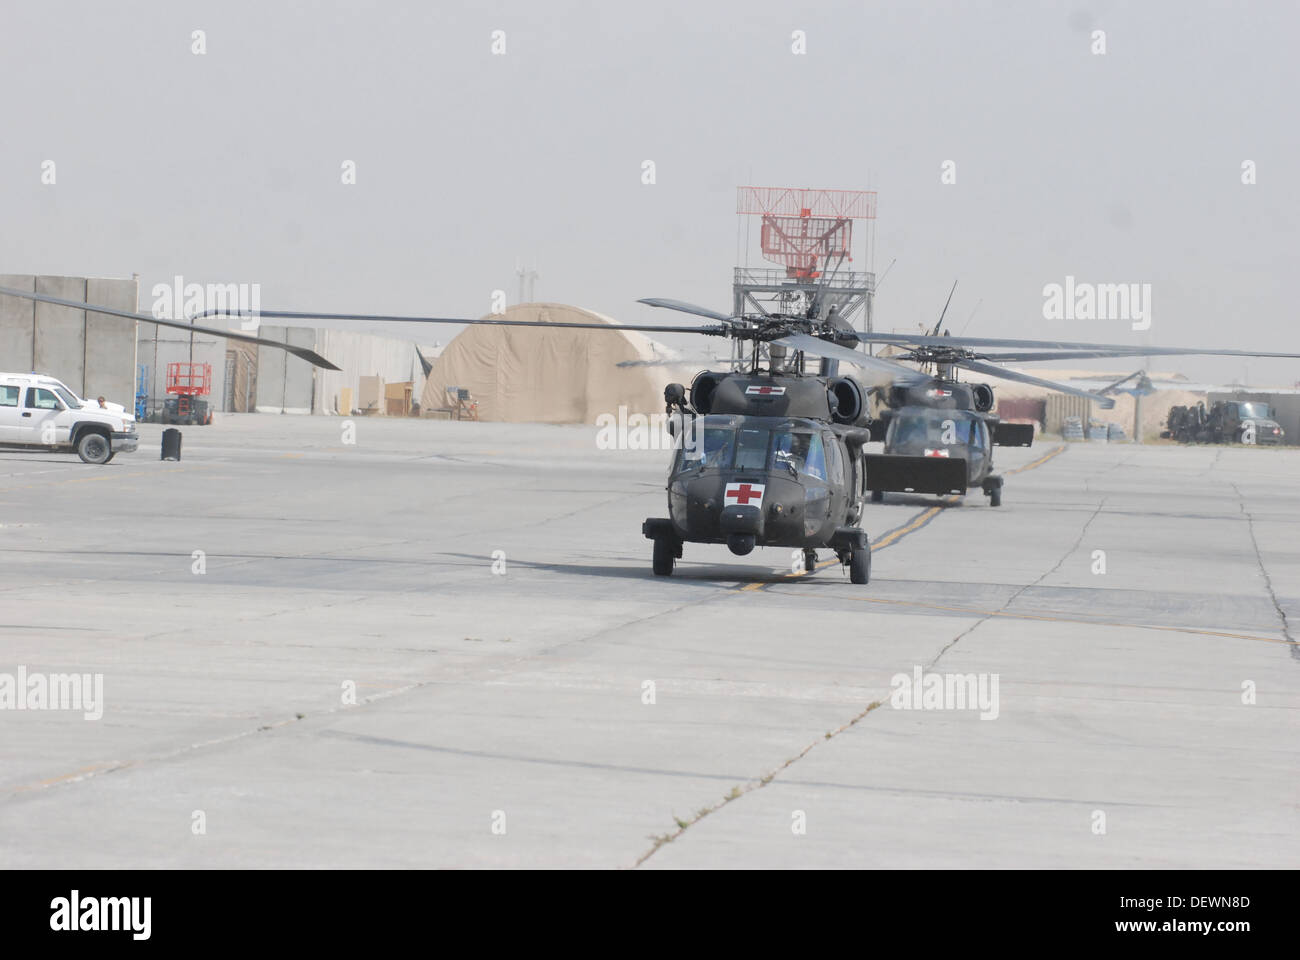 Ein paar der HH - 60M Black Hawk medizinische Evakuierung Hubschrauber bemannt von den Mitgliedern des C Company (DUSTOFF), 3. Bataillon (allgemeiner Support), 10. Combat Aviation Brigade, Task Force Phoenix, Taxi zum Patienten Abgabeort außerhalb Heathe N. Craig Joint der Stockfoto